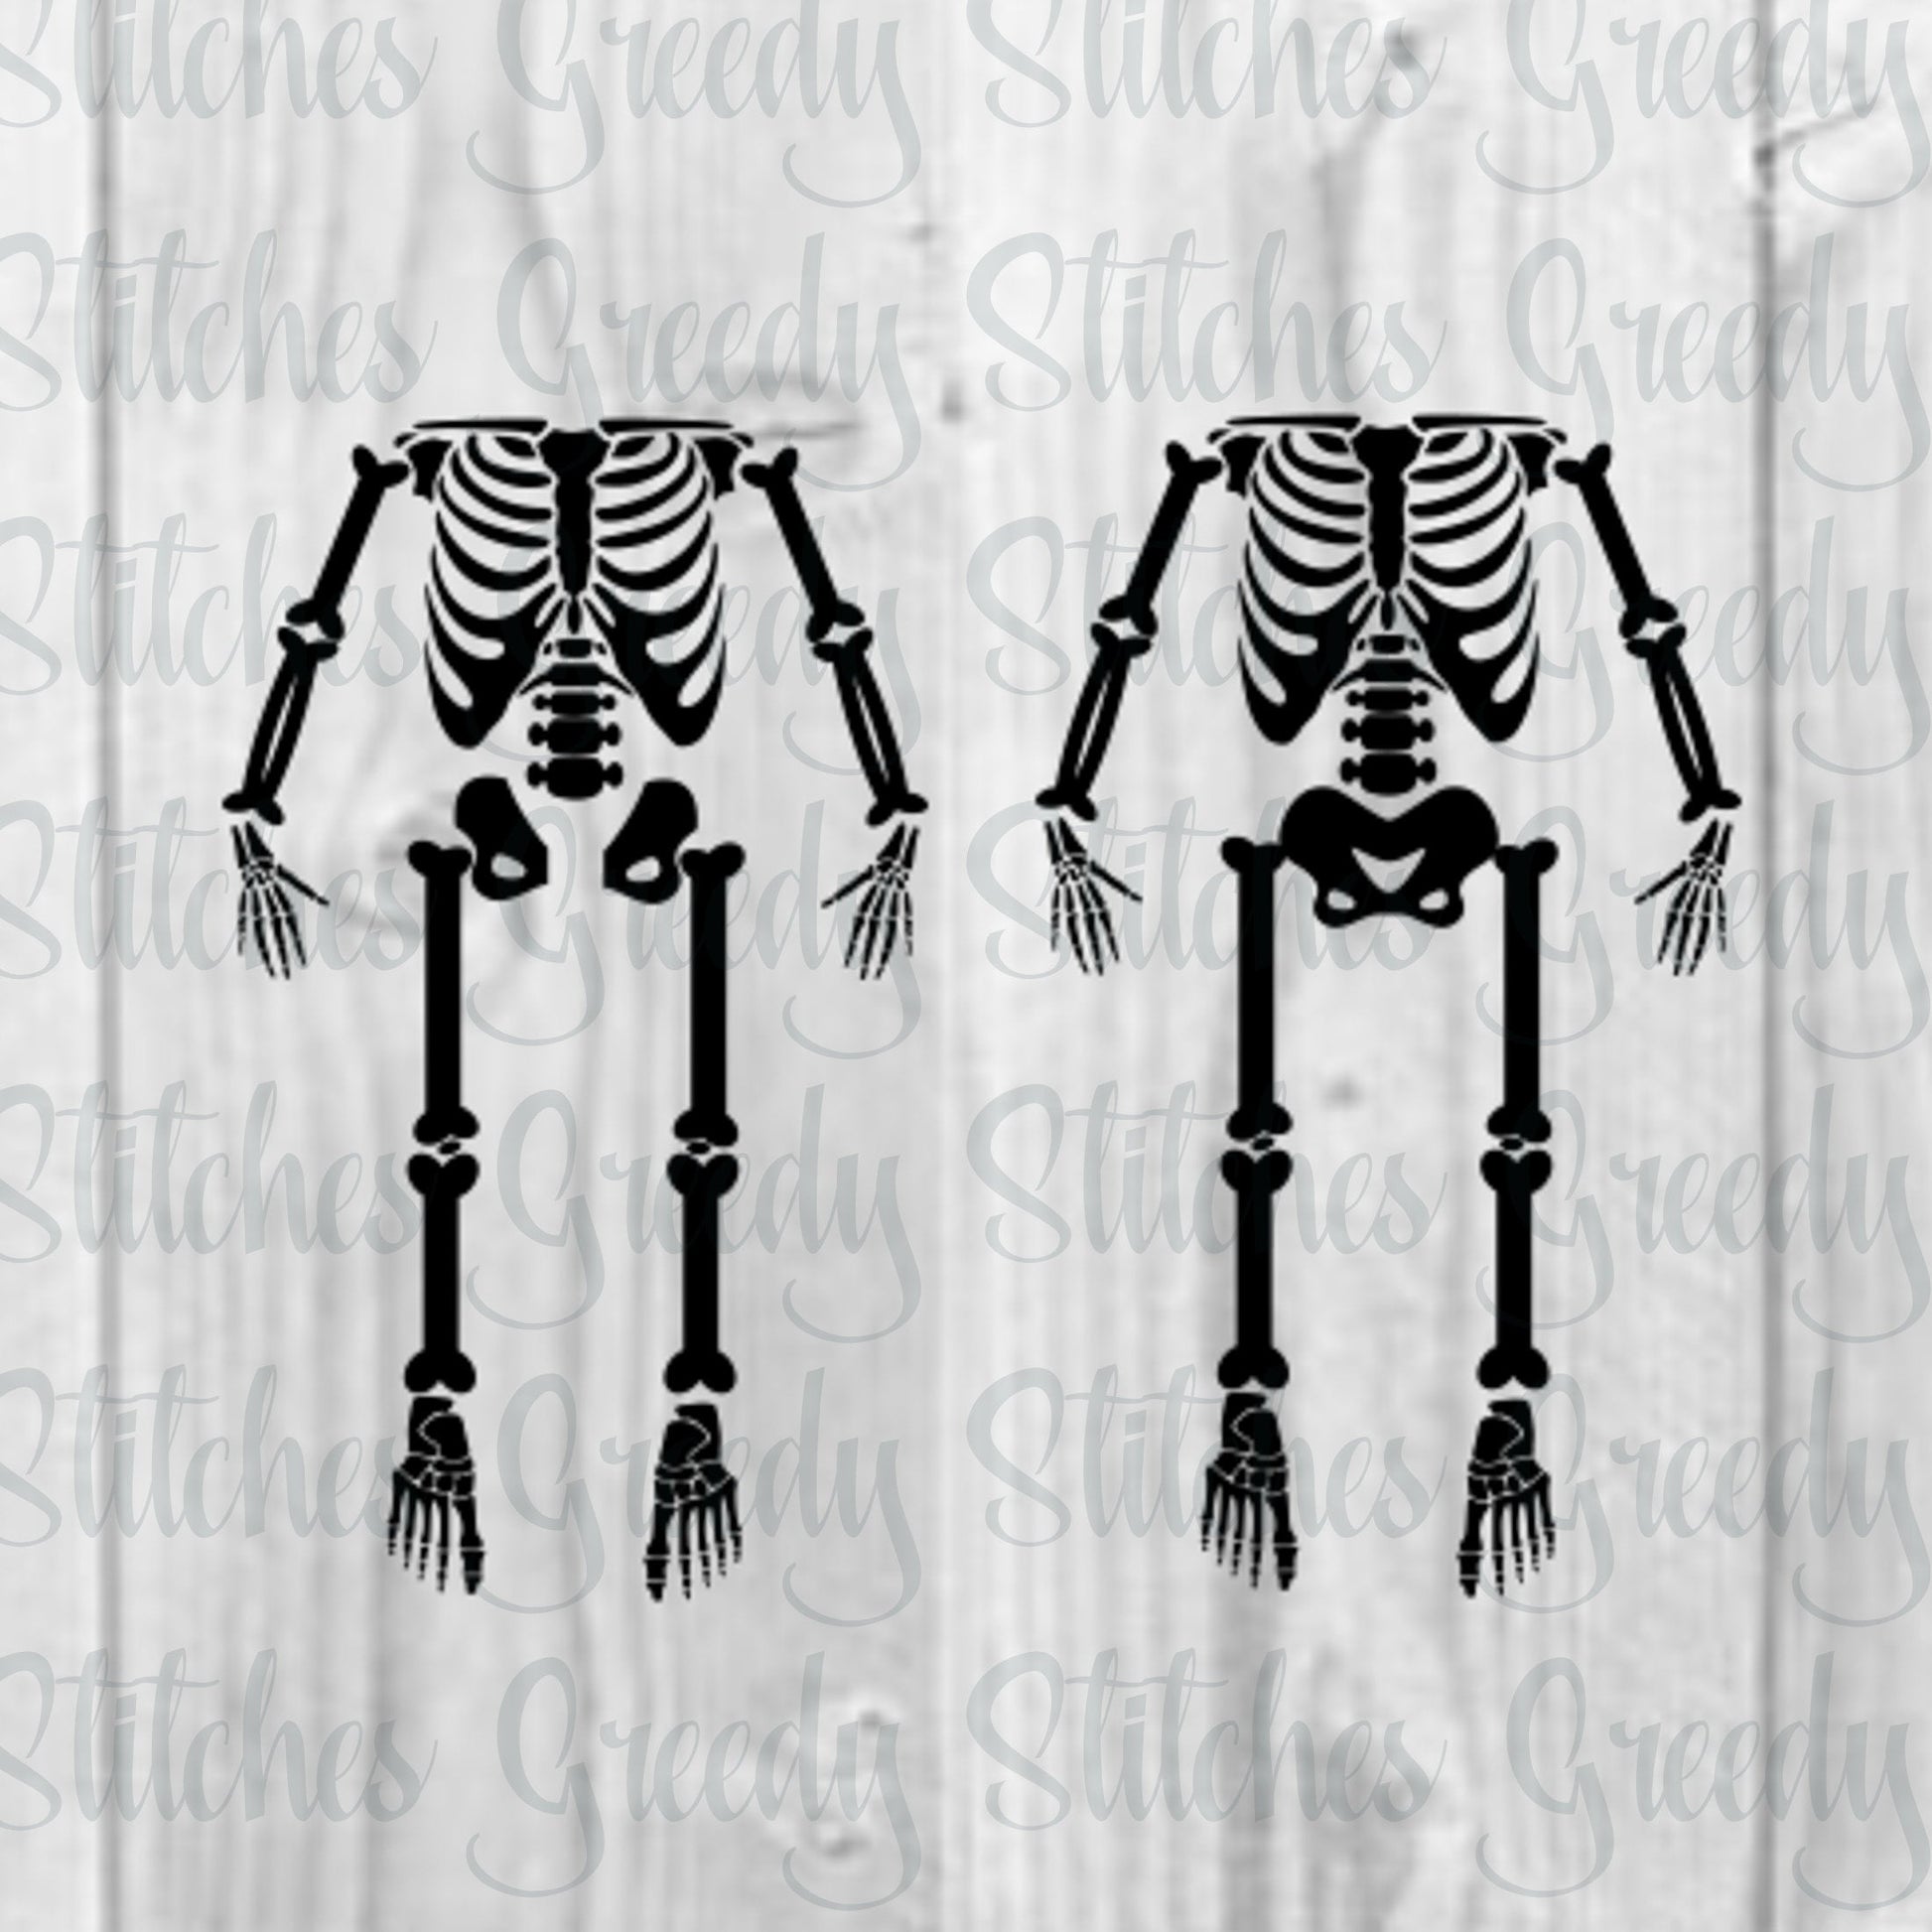 Halloween SvG | DIY Skeleton Costume SvG | Trick or Treat SVG | Skeleton svg, dxf, eps, png. Skeleton | Bones | Instant Download Cut Files.